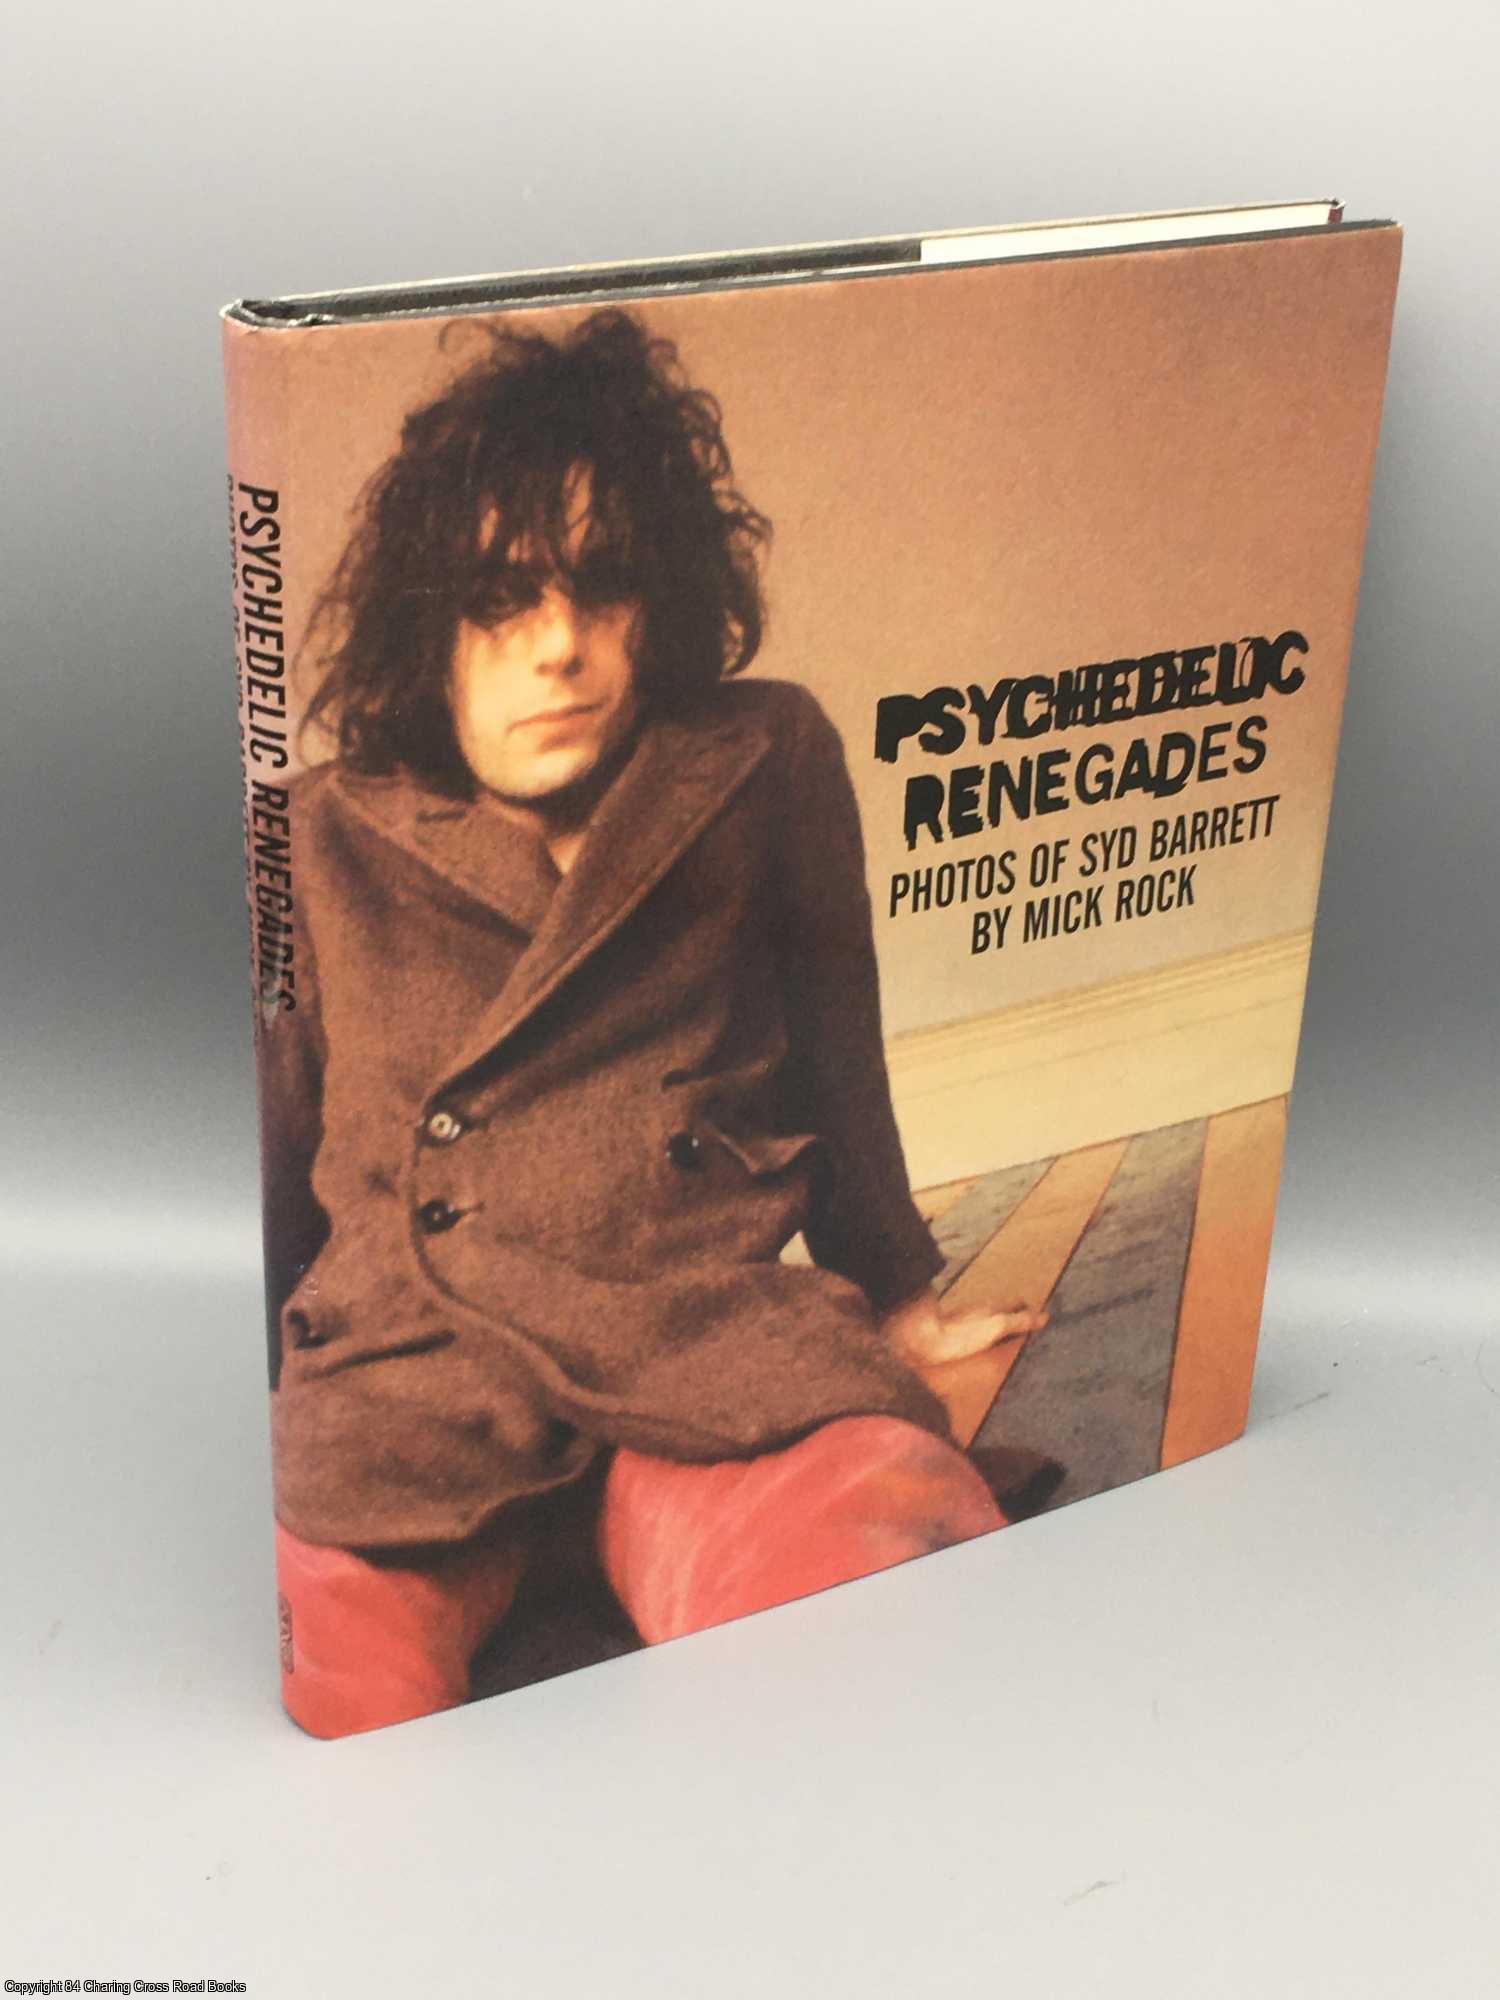 Psychedelic Renegades: Photos of Syd Barrett